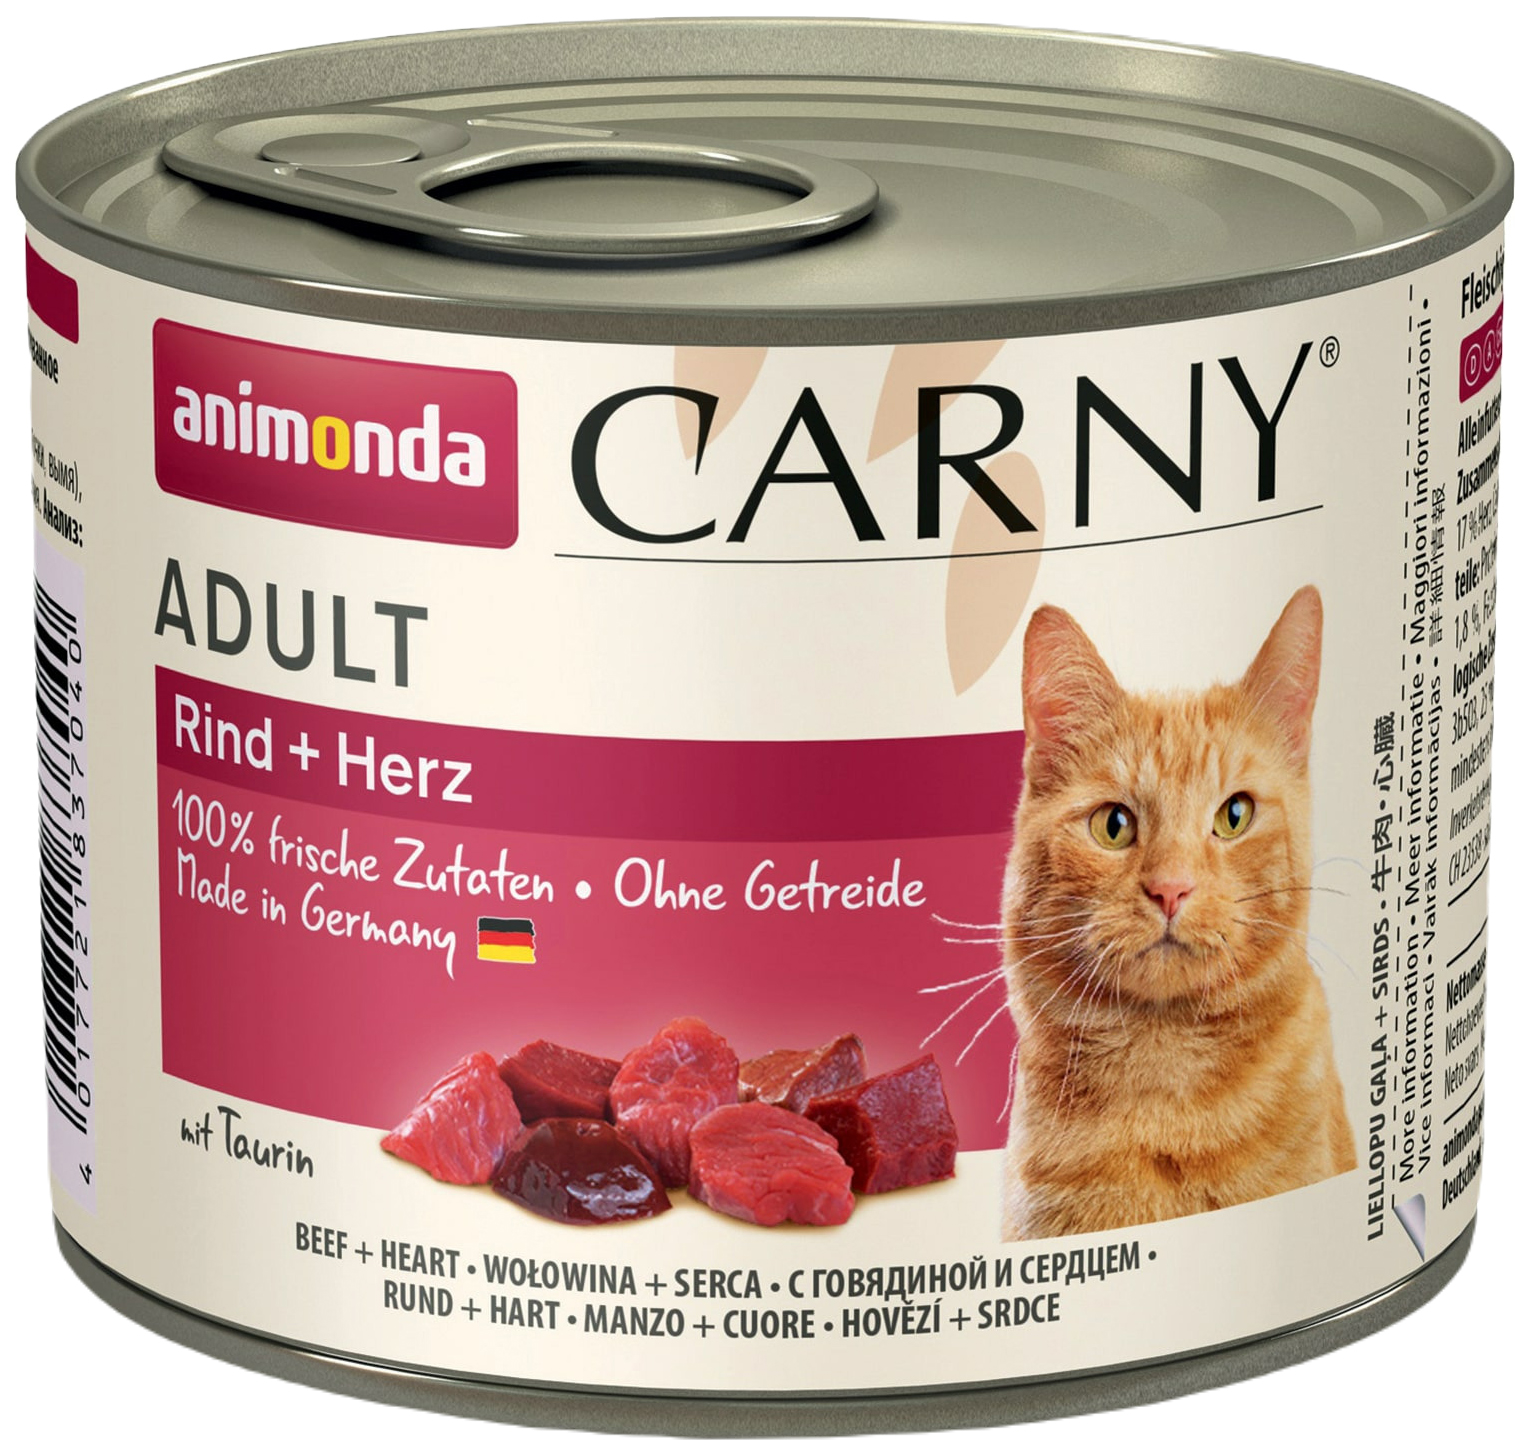 фото Влажный корм для кошек animonda carny adult с говядиной и сердцем, 6шт по 200г